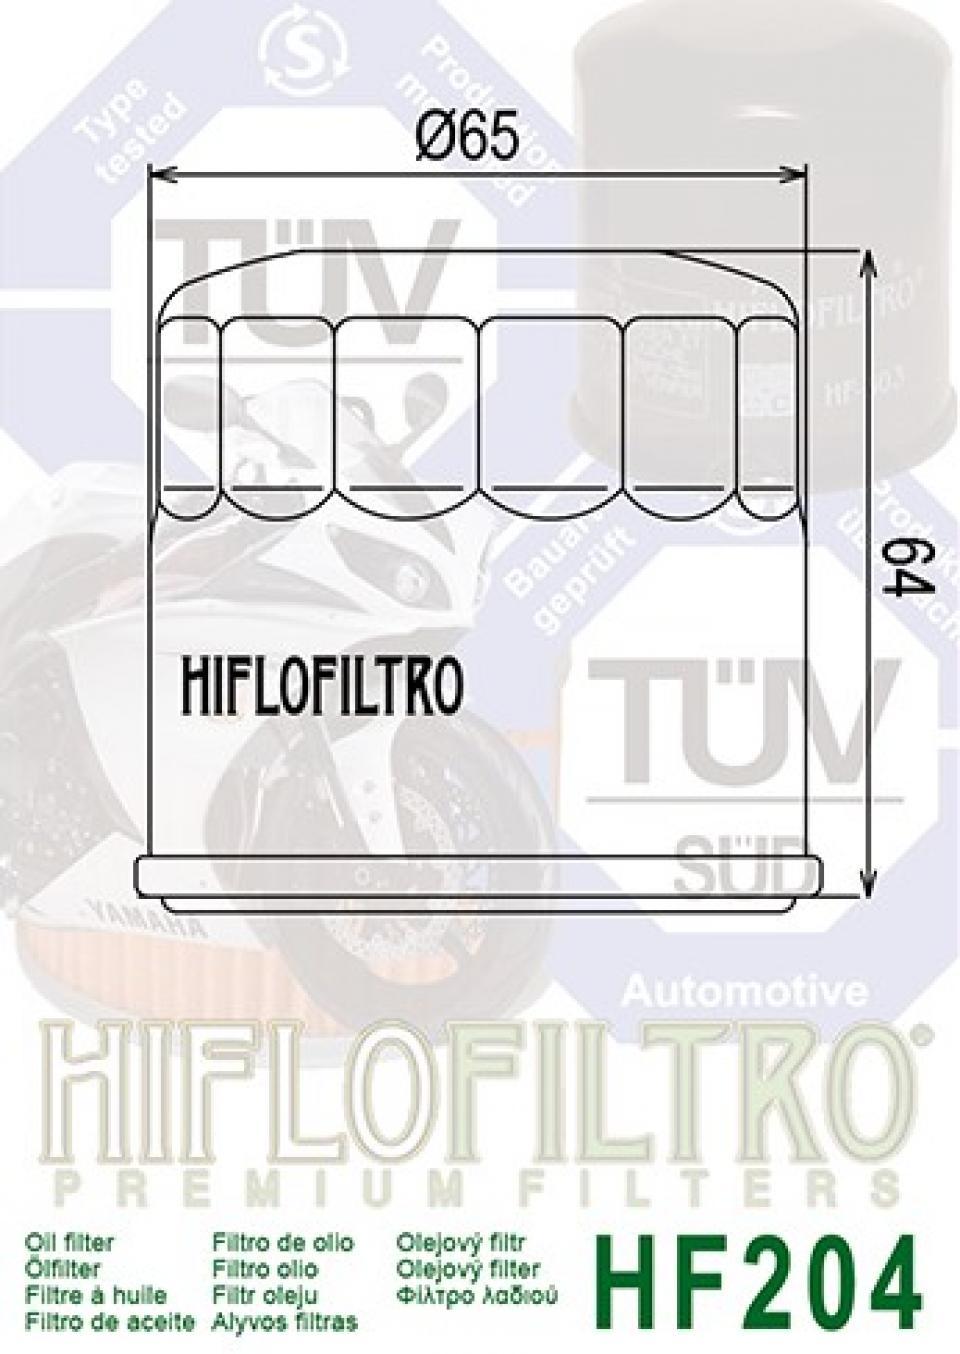 Filtre à huile Hiflofiltro pour Moto Yamaha 320 MT-03 2016 à 2017 Neuf